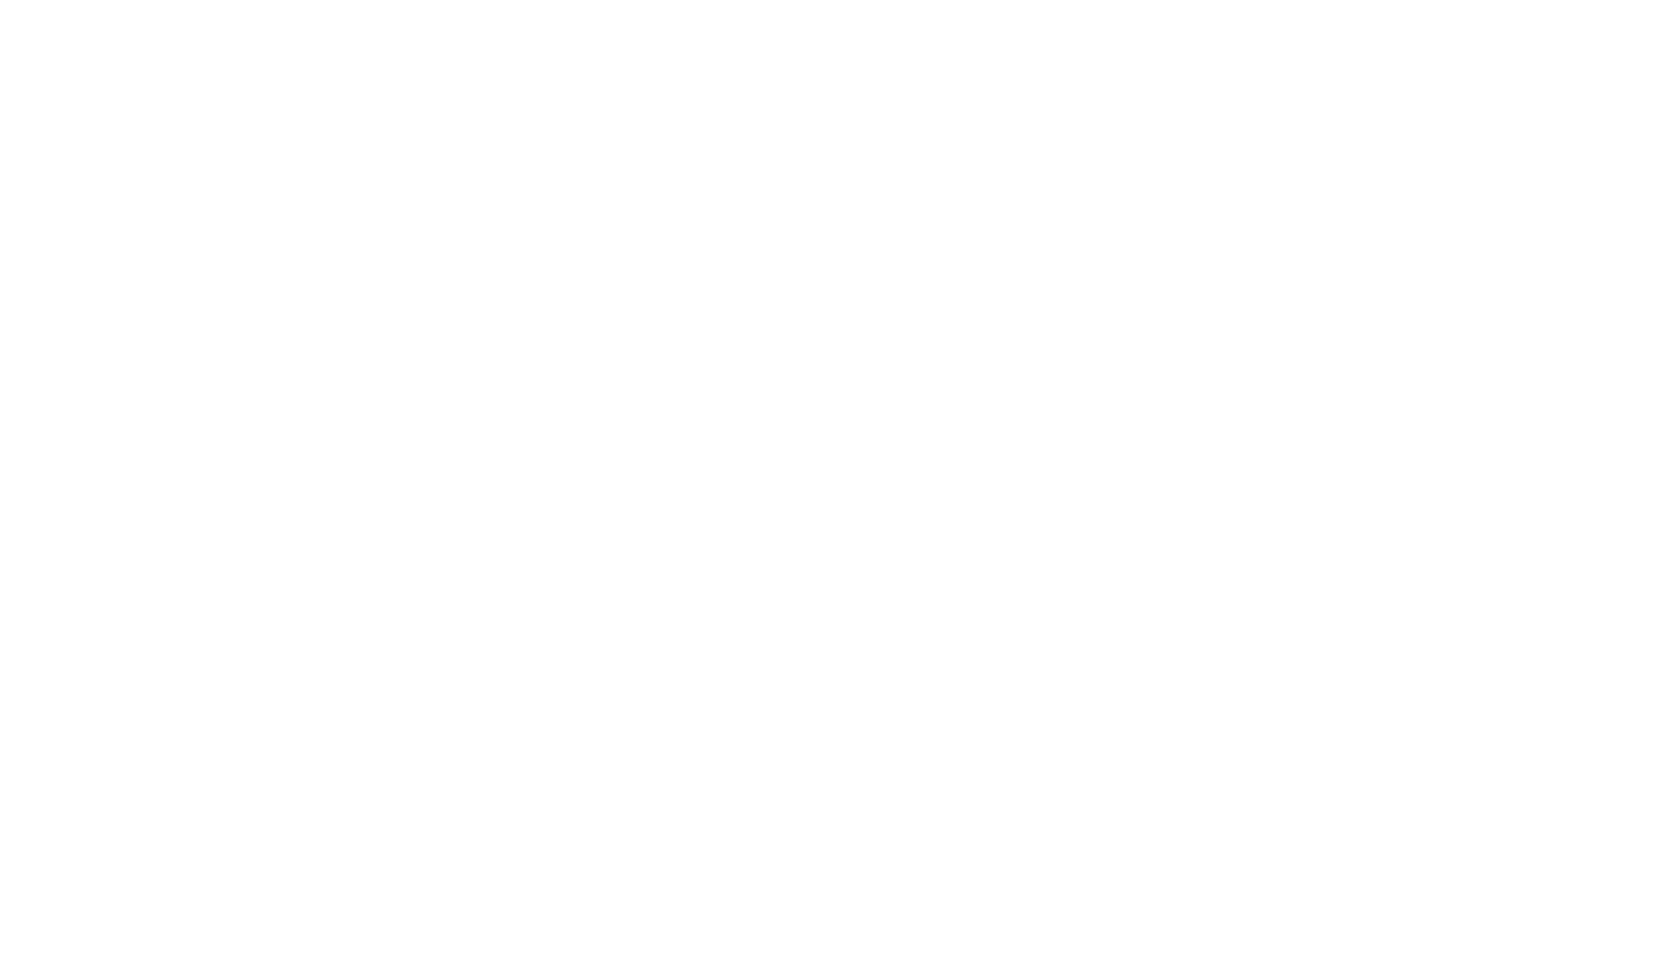 Профиль Flexy FUSION 03 для многоуровневых натяжных потолков с гарпунной системой крепления полотна, с бесщелевым примыканием полотен, без подсветки в Москве, СПБ и России